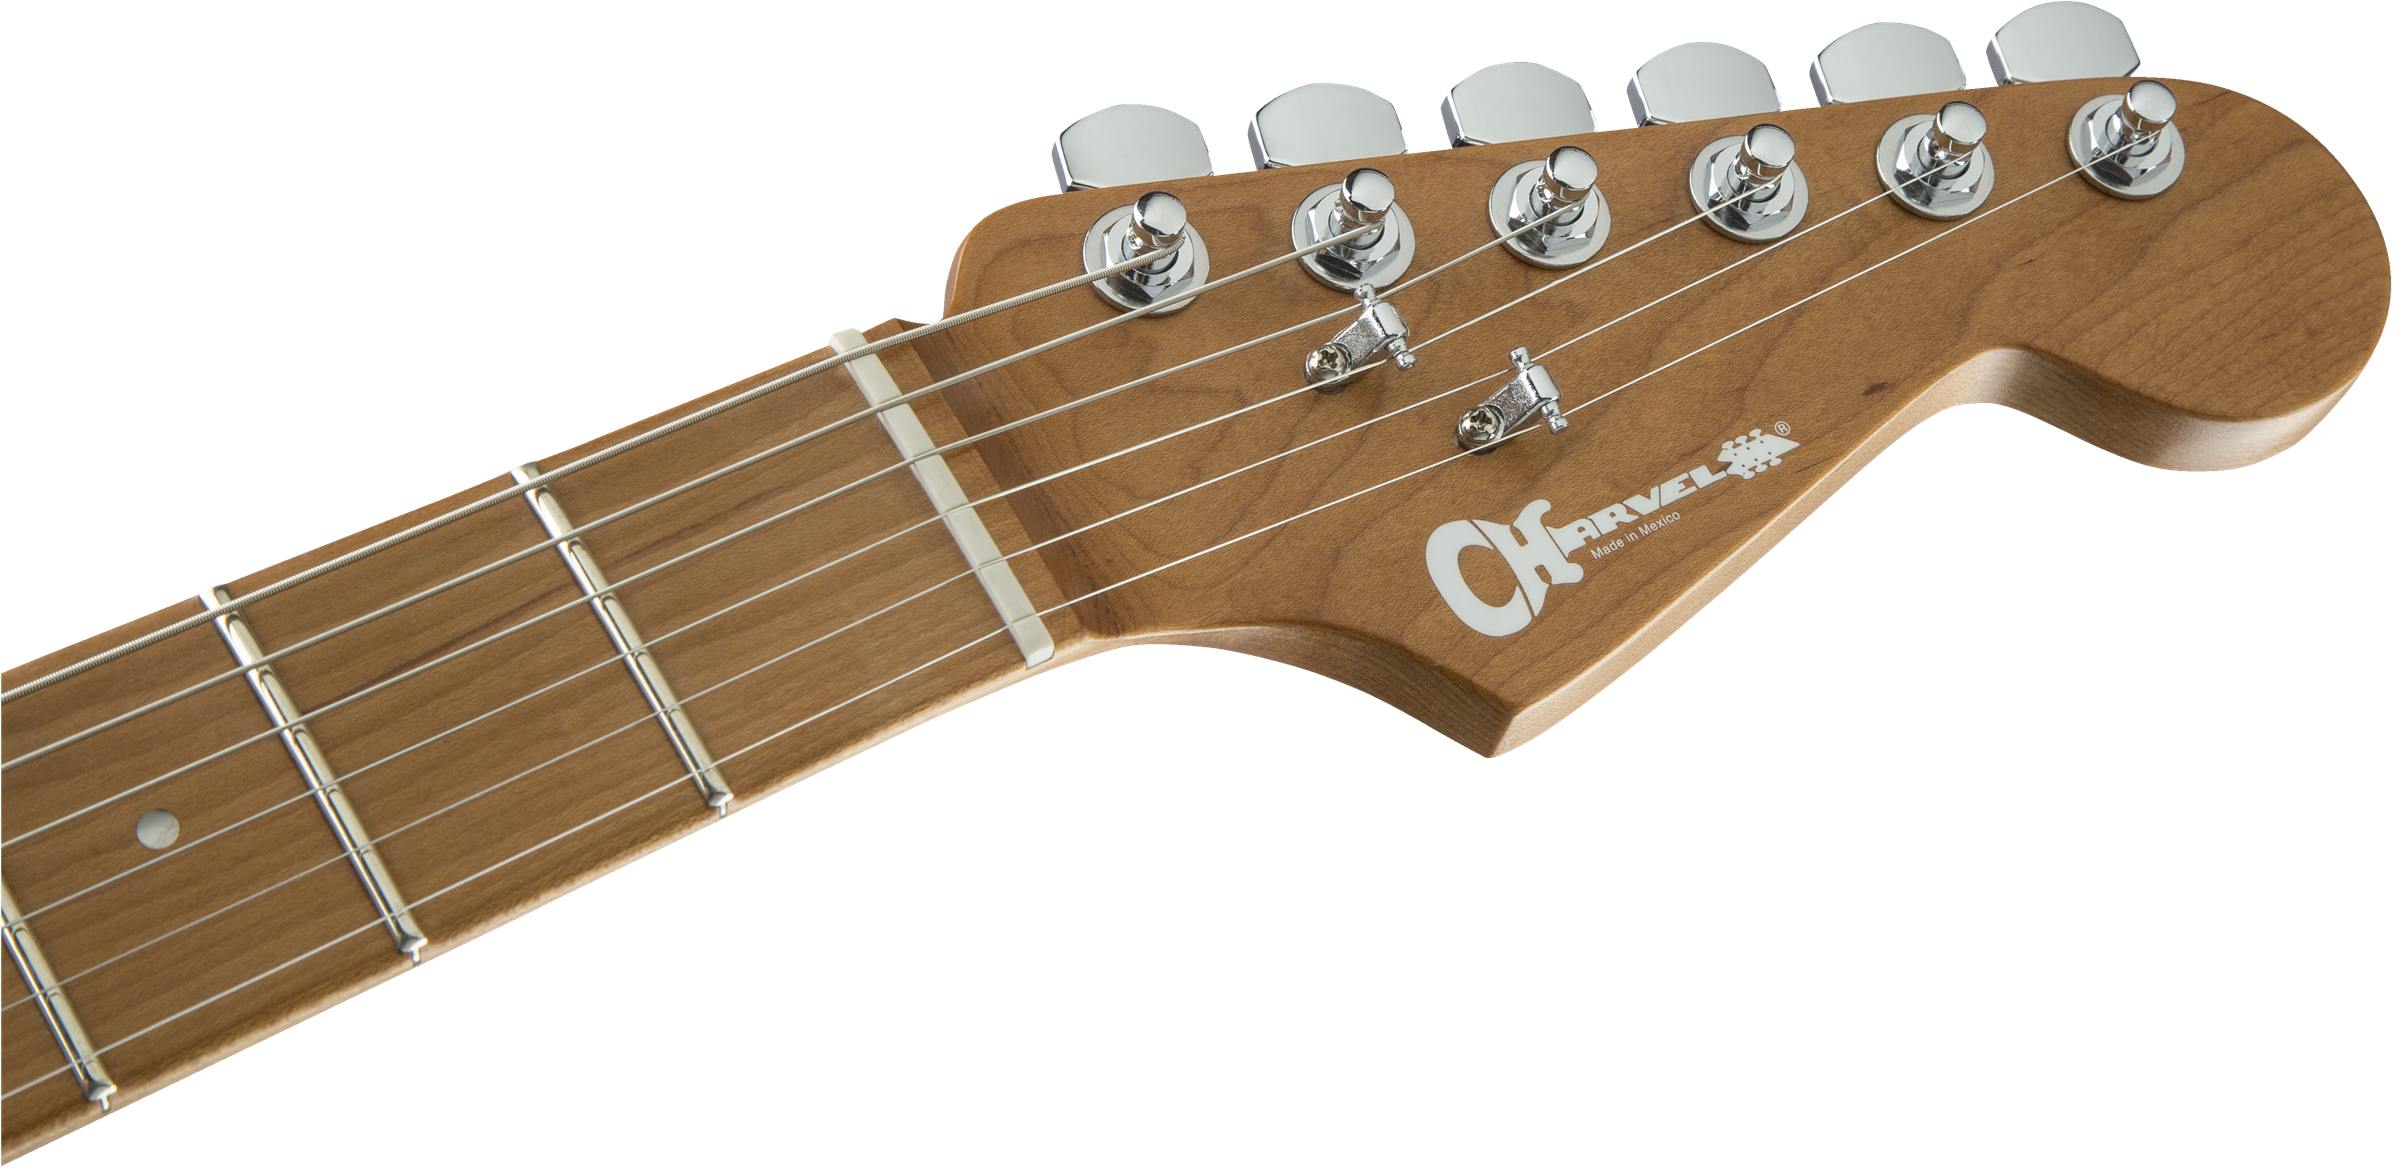 Charvel Pro-mod Dk24 Hss 2pt Cm Trem Mn - Satin Shell Pink - E-Gitarre in Str-Form - Variation 4